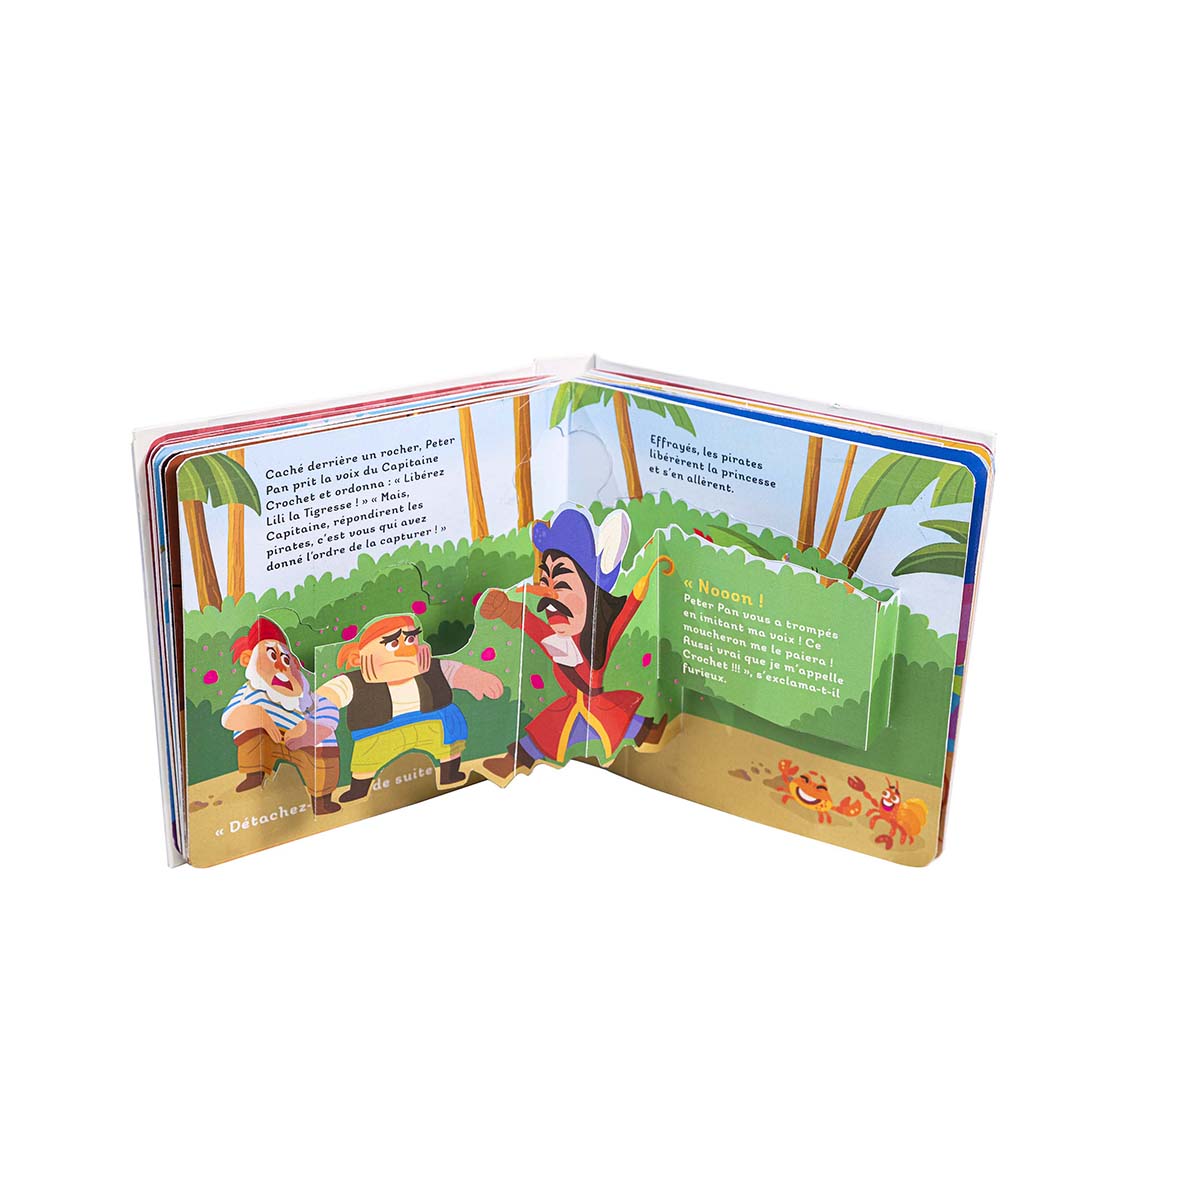 Mon livre pop-up - peter pan : Collectif - 2384531166 - Livres pour enfants  dès 3 ans